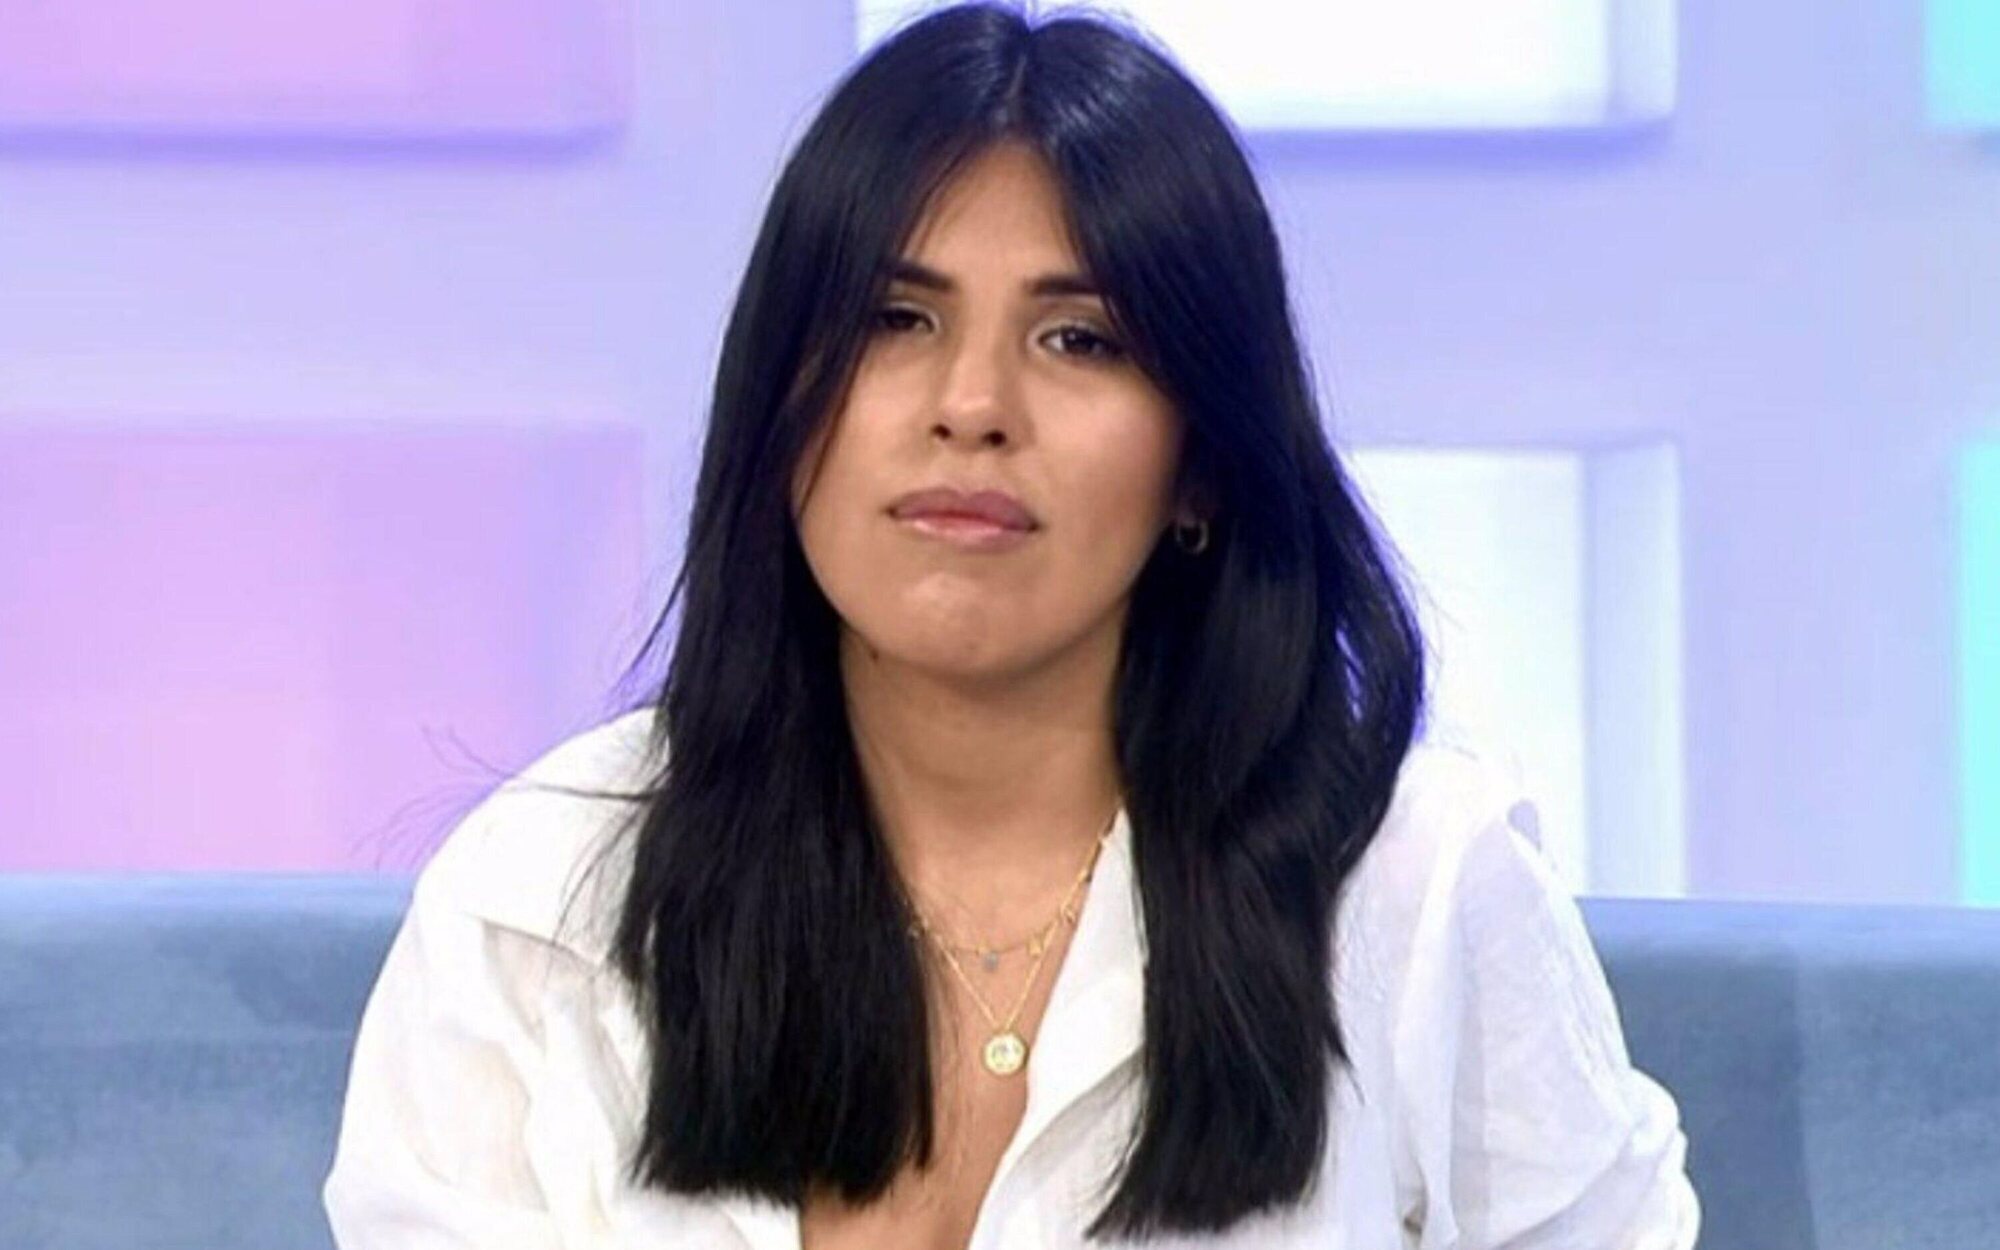 Isa Pantoja, devastada, reacciona con firmeza a la entrevista de Kiko Rivera y estudia tomar medidas legales